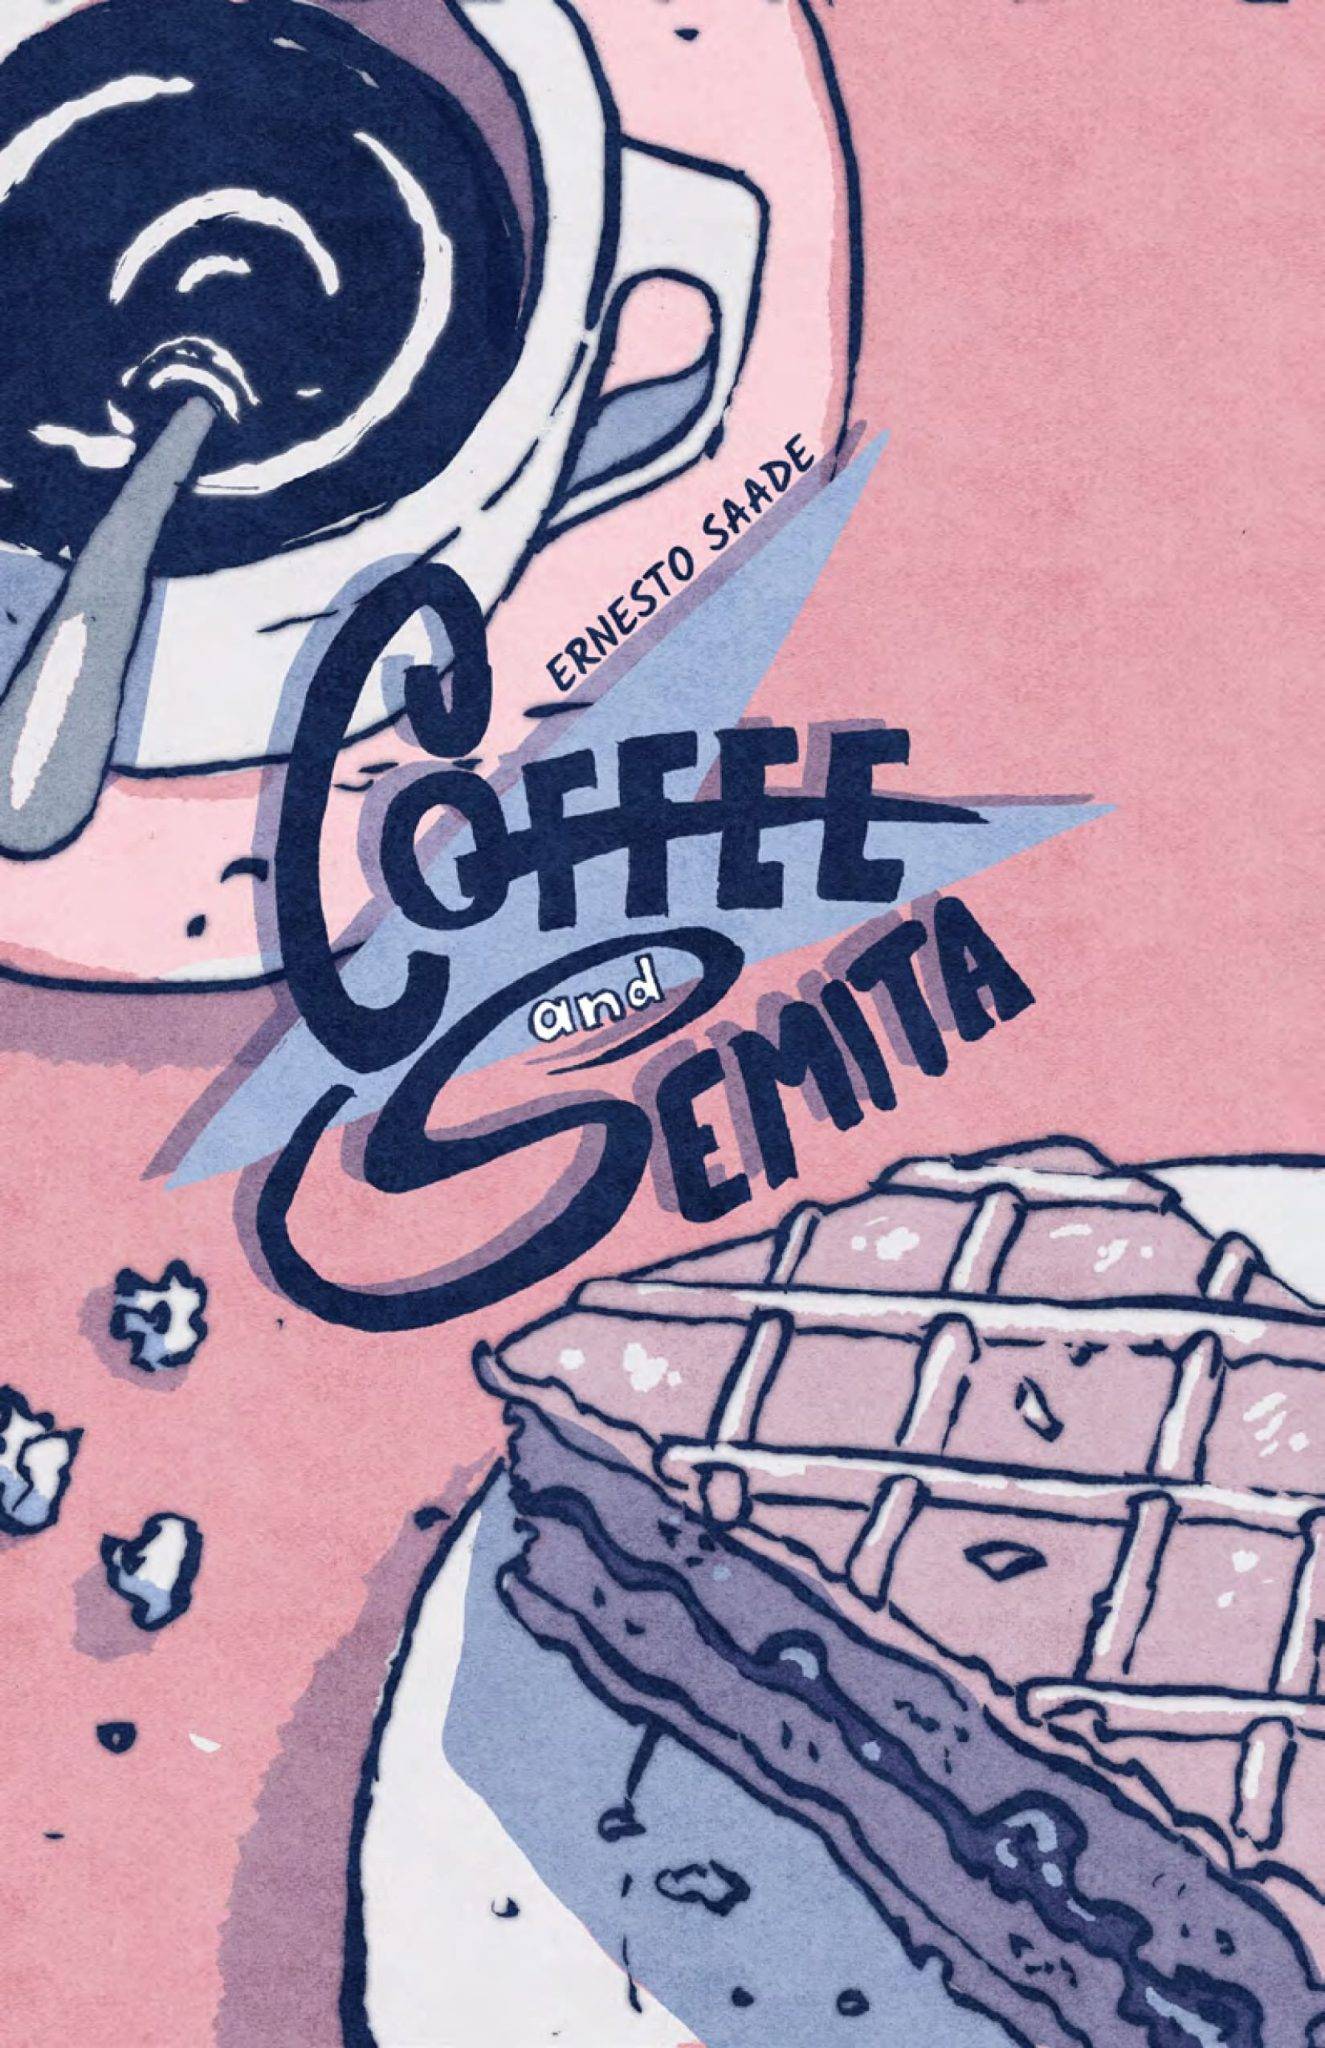 Portada-coffe and semita